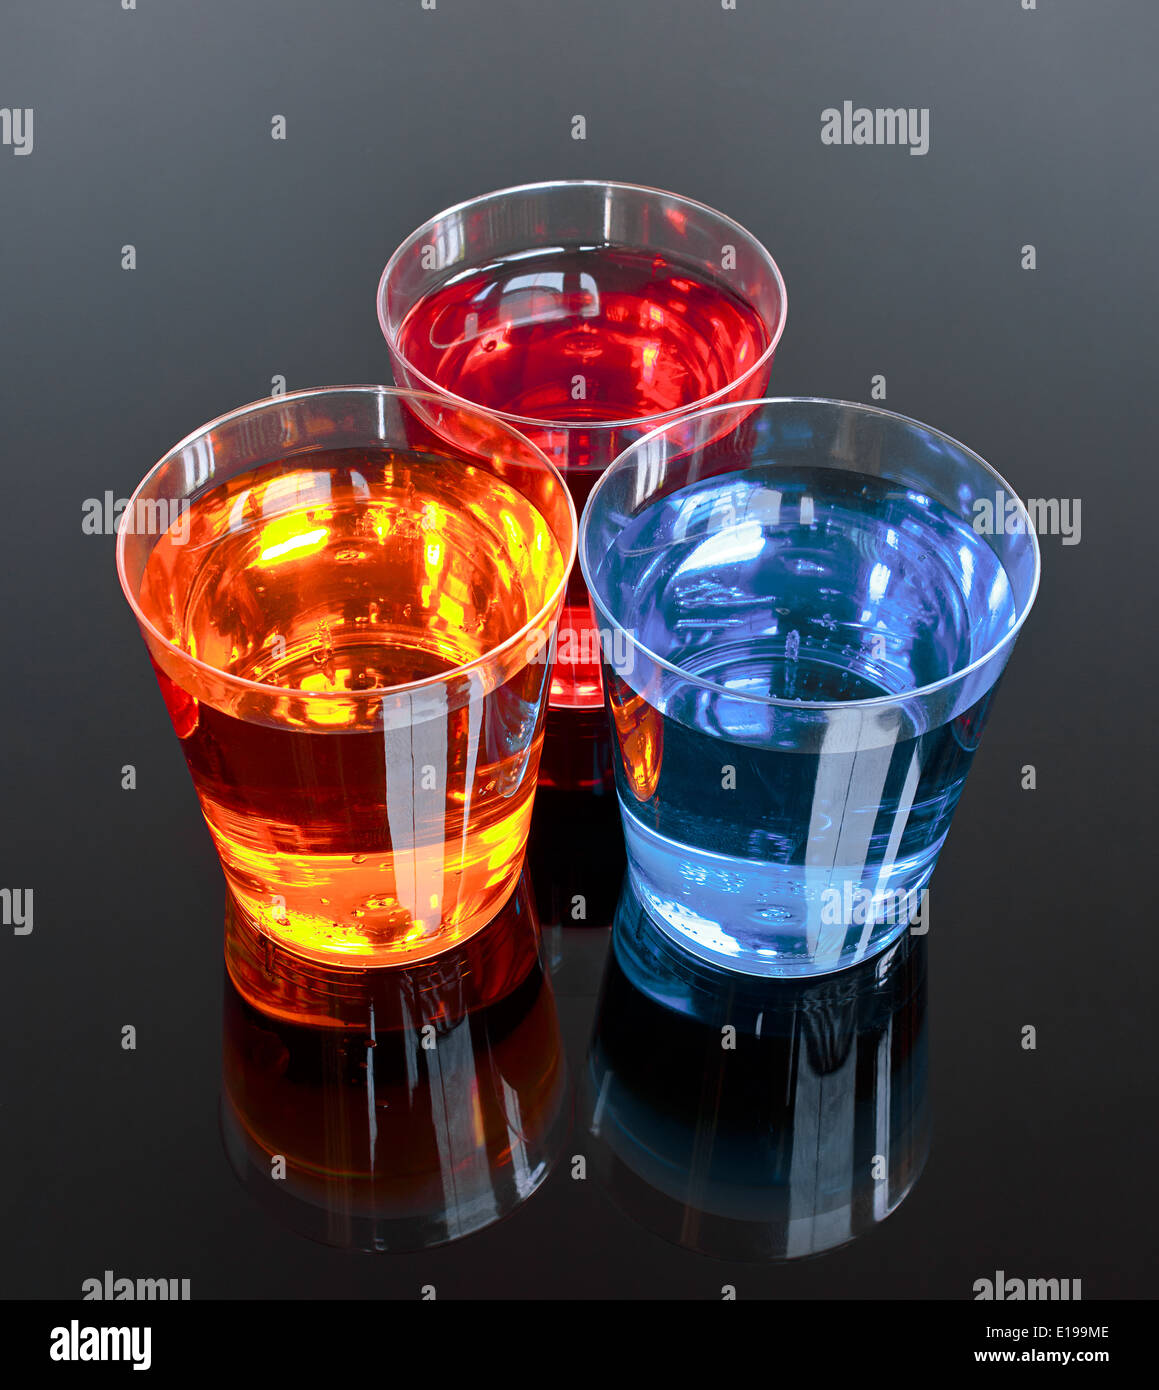 Tres disparos sobre un fondo negro perfecto para promociones u oferta en la industria de bebidas alcohólicas Foto de stock